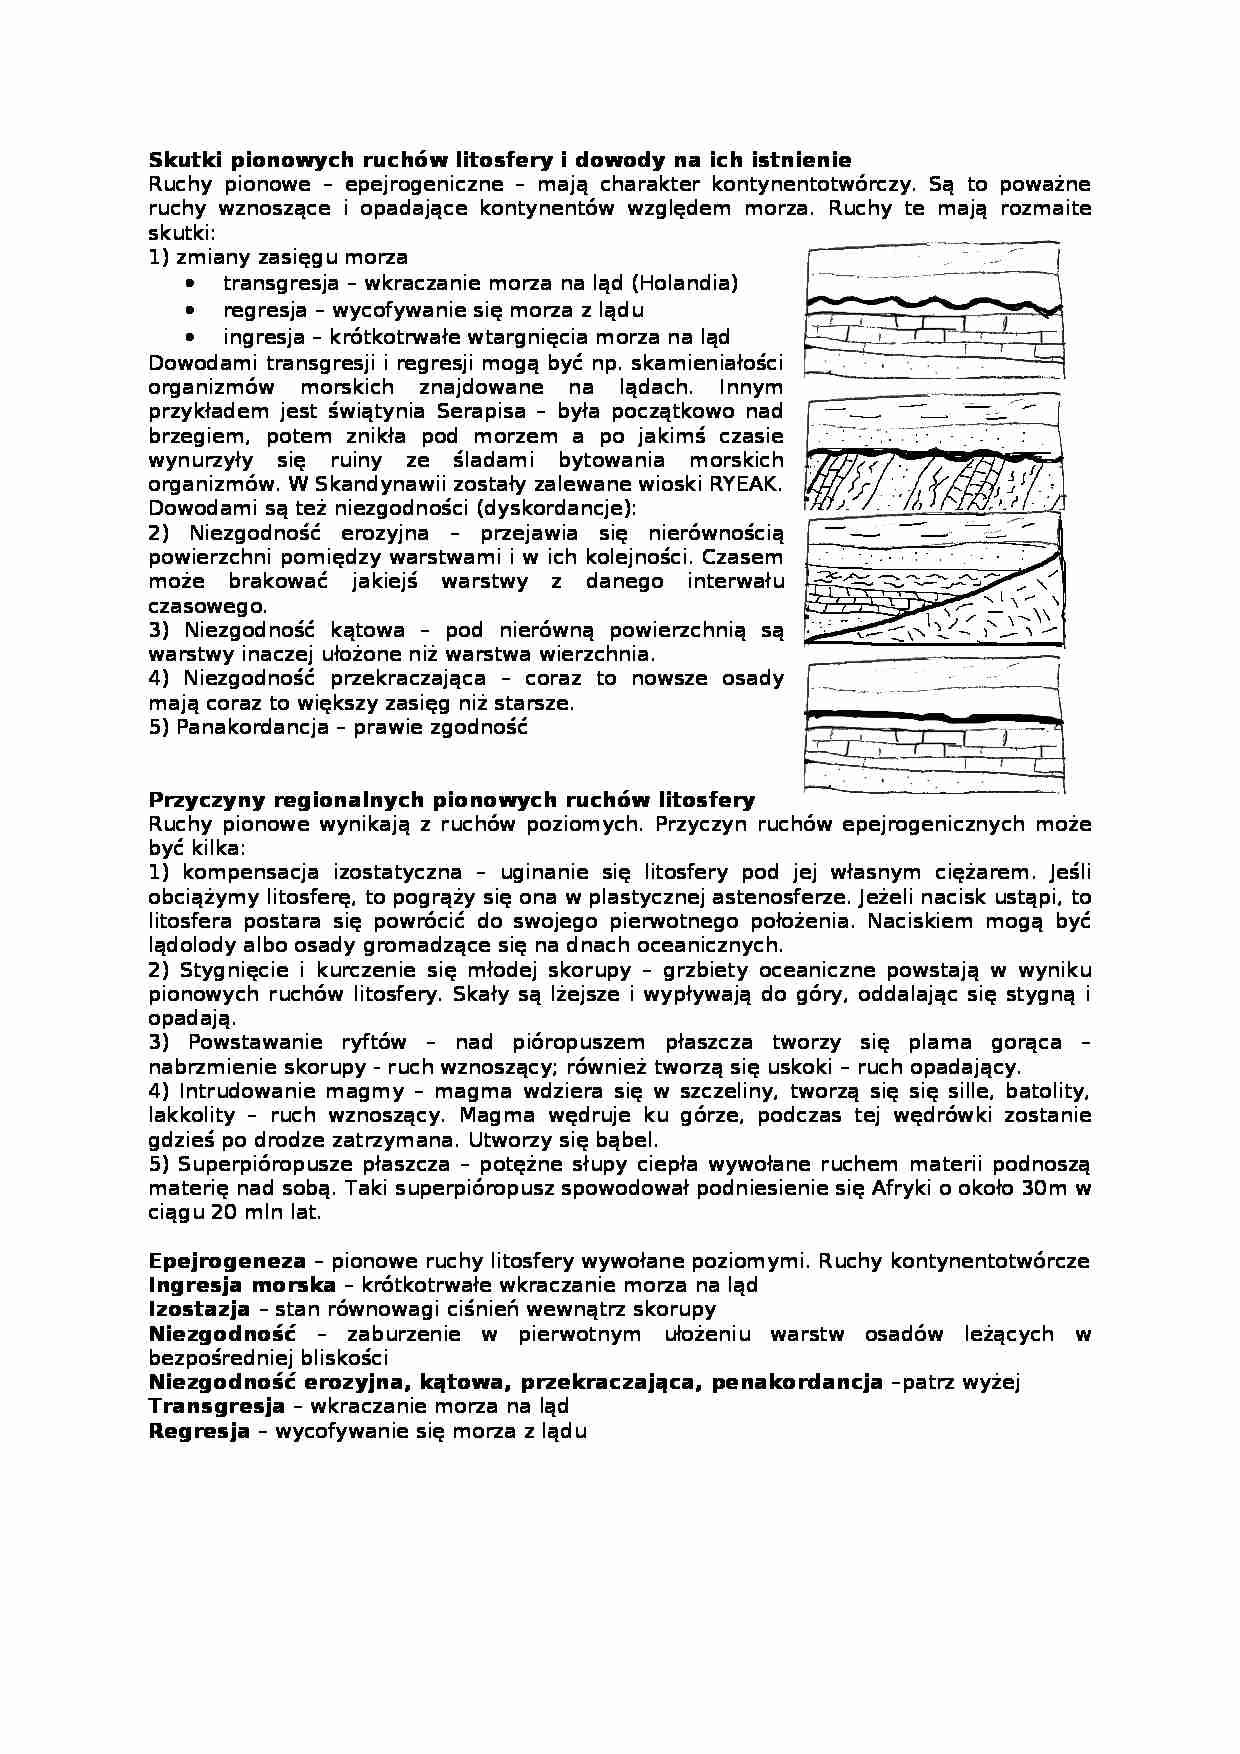 Wykład z geologii o pionowych ruchach litosfery - strona 1